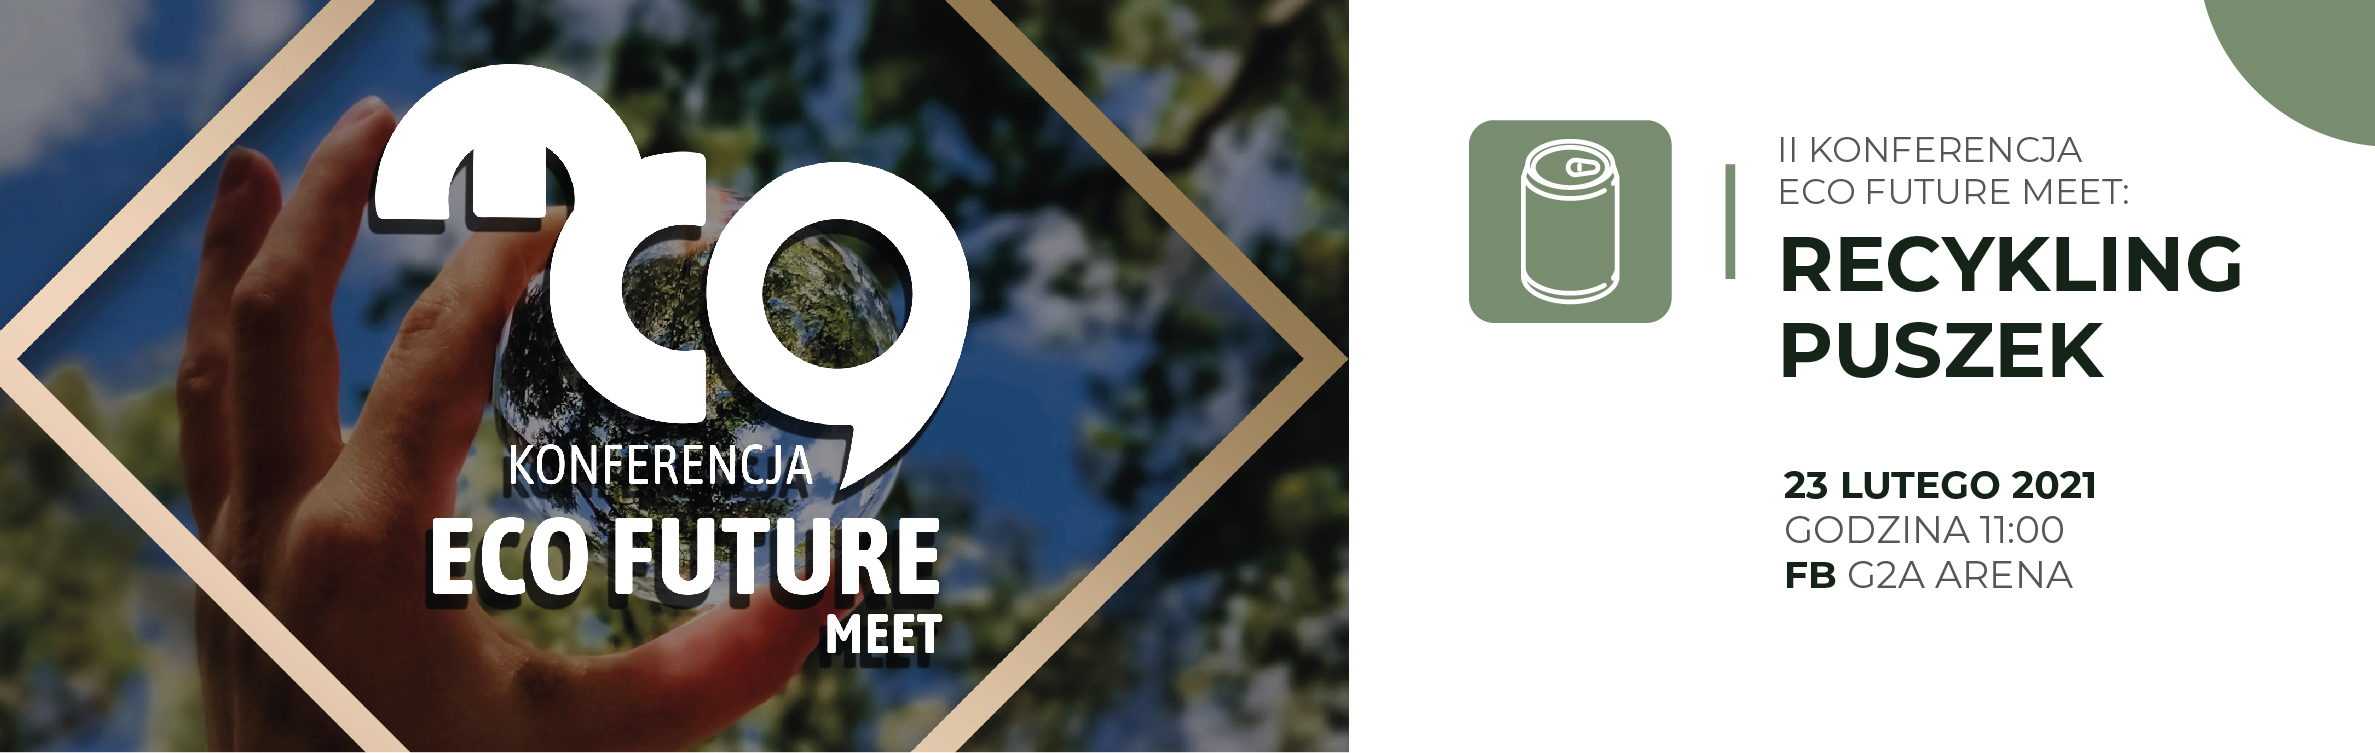 III Konferencja Eco Future Meet: Kalejdoskop Zielonych Certyfikacji